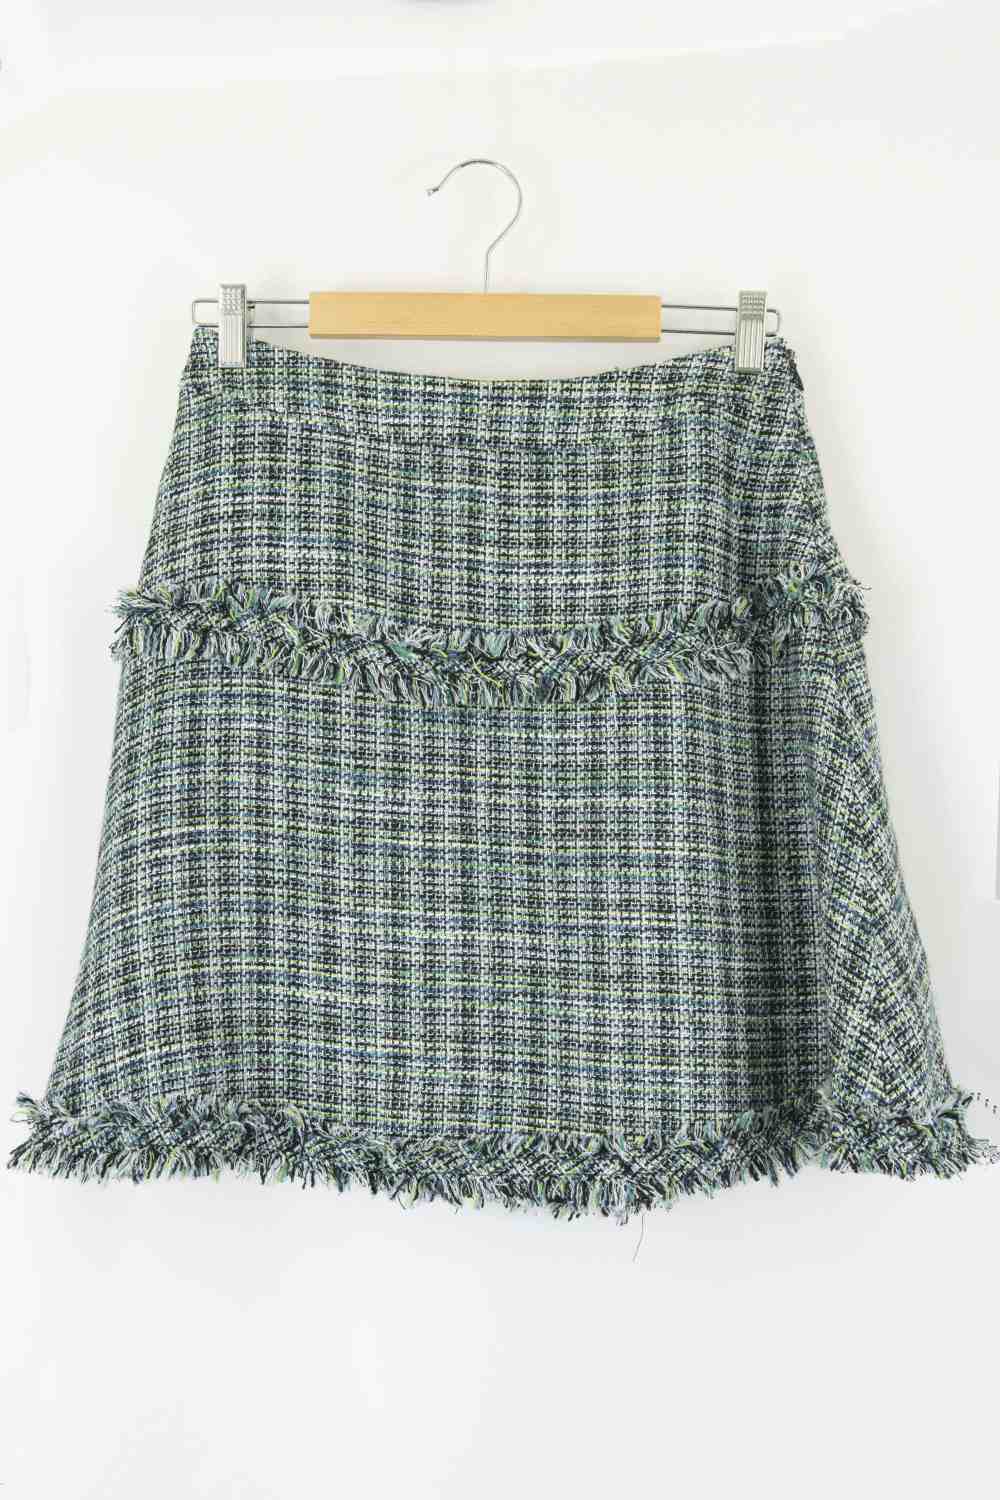 Thurley Green Tweed Skirt 10